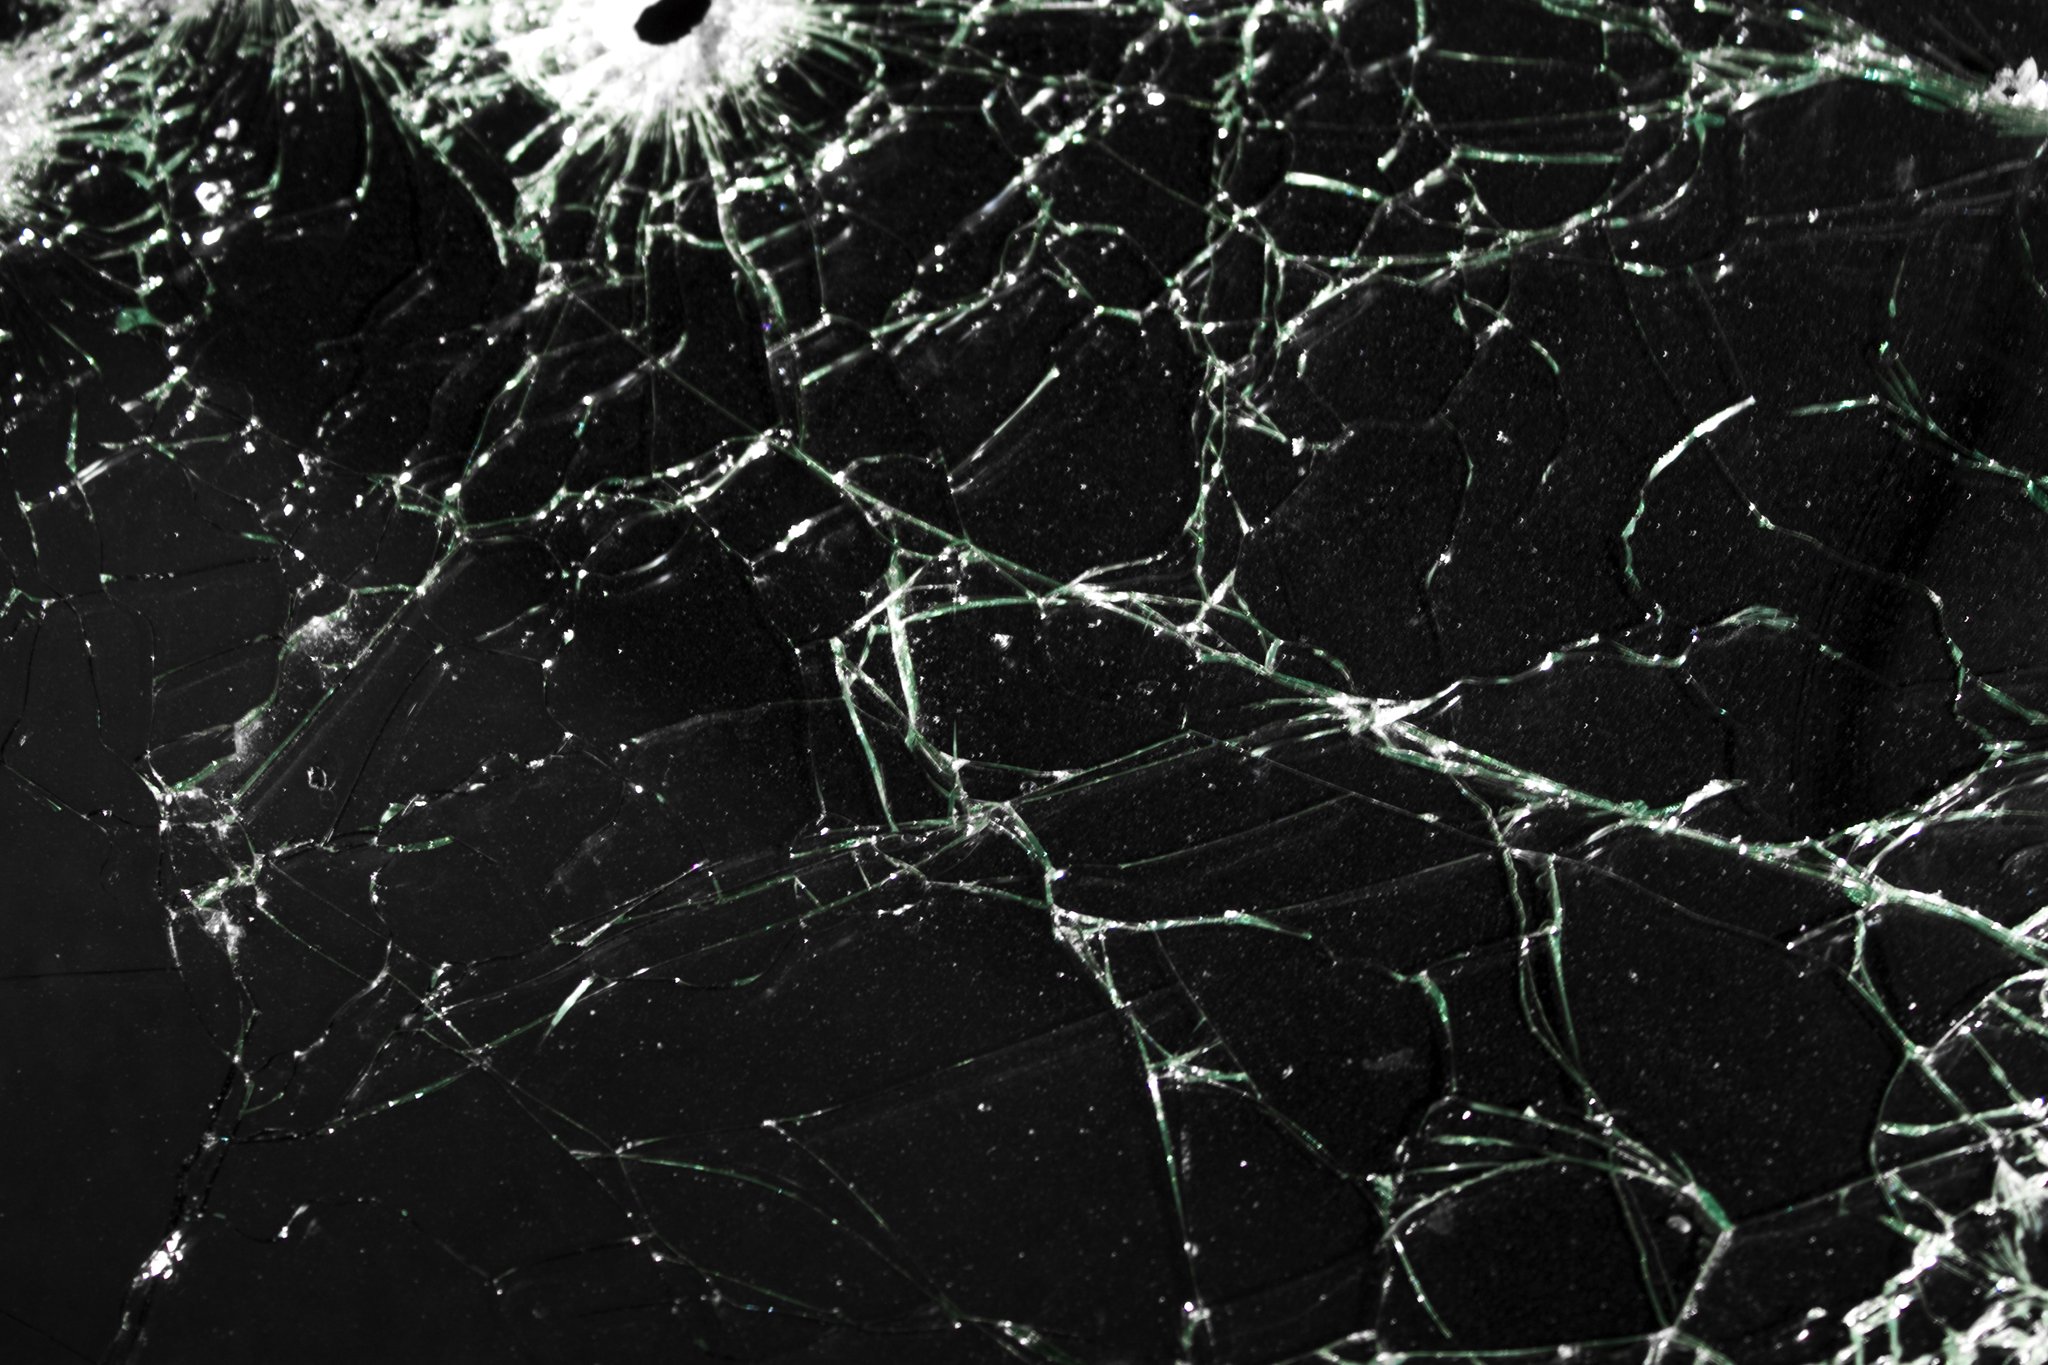  textures glass crack broken glass wallpapers textures   download